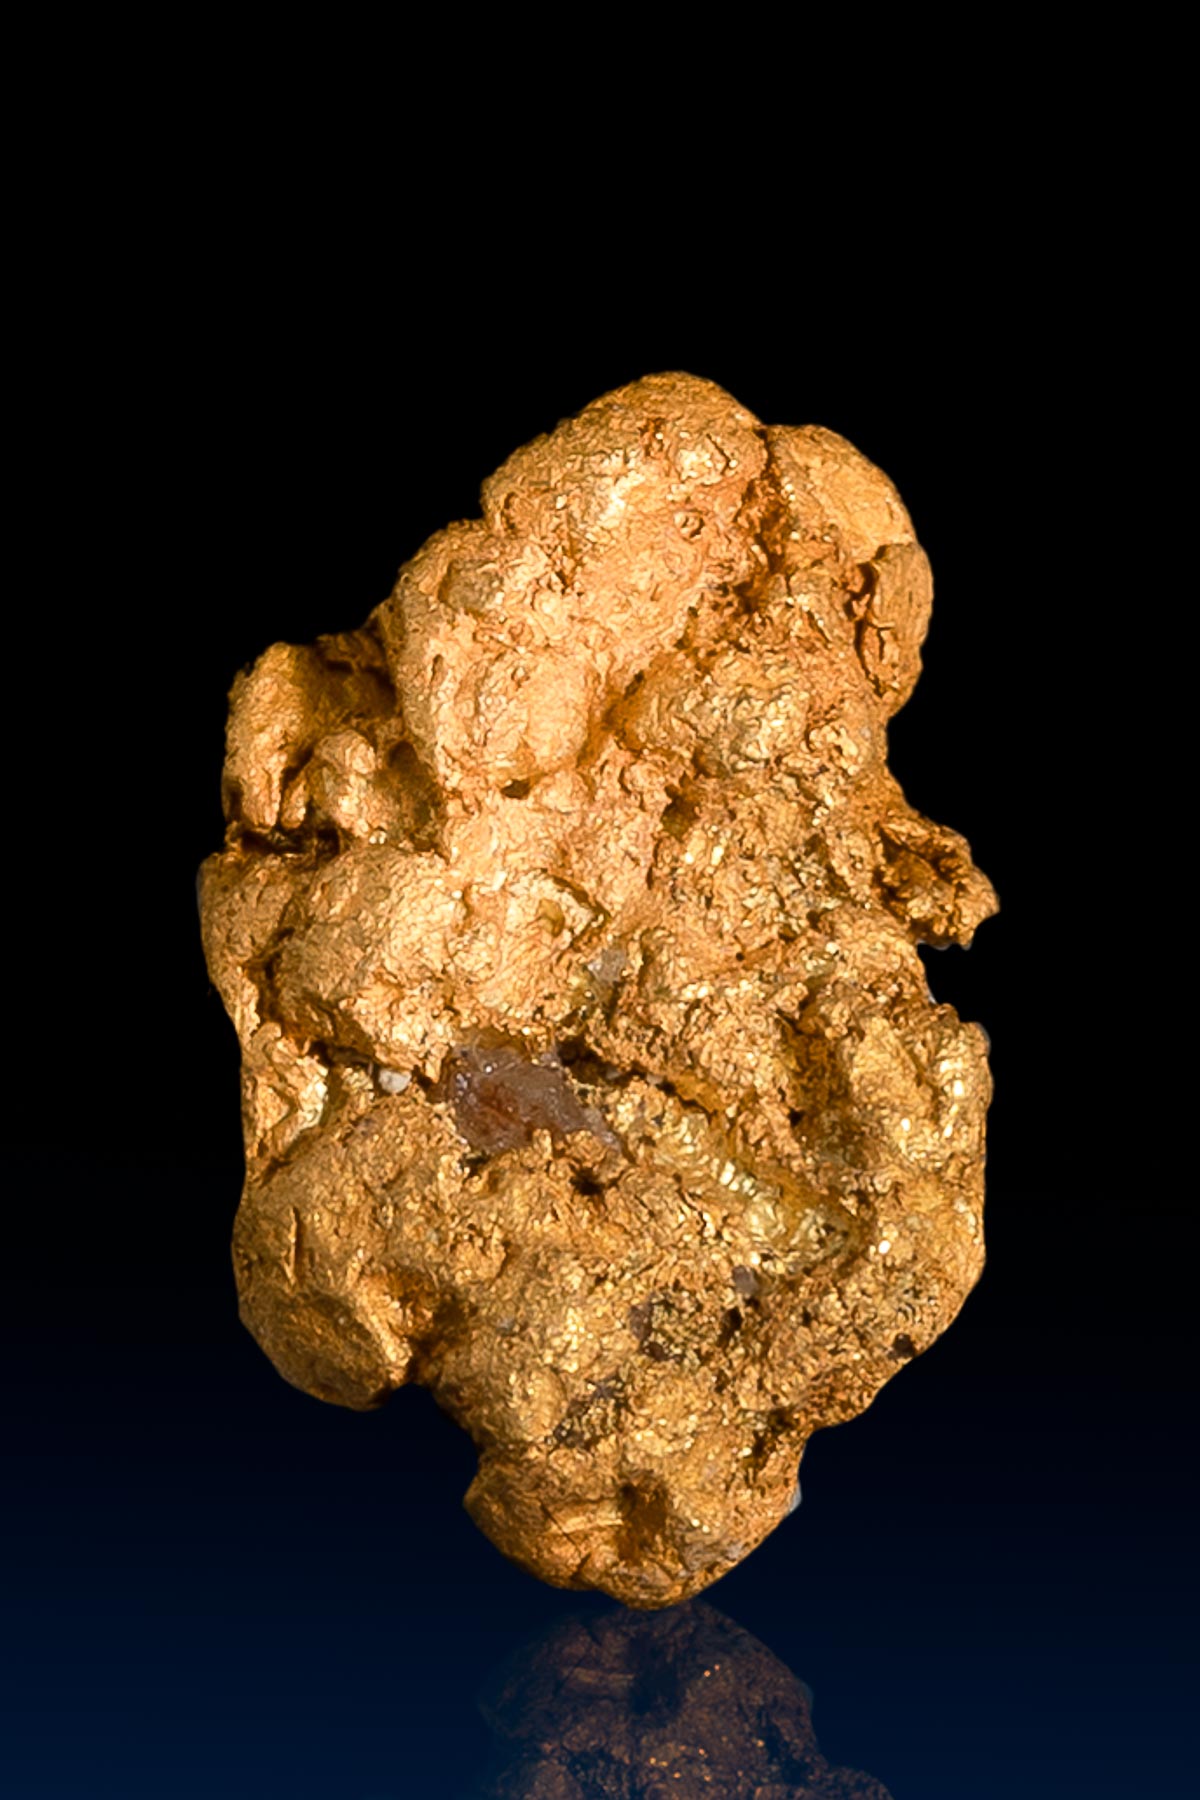 Flat Oblong Arizona Natural Gold Nugget - 2.41 grams